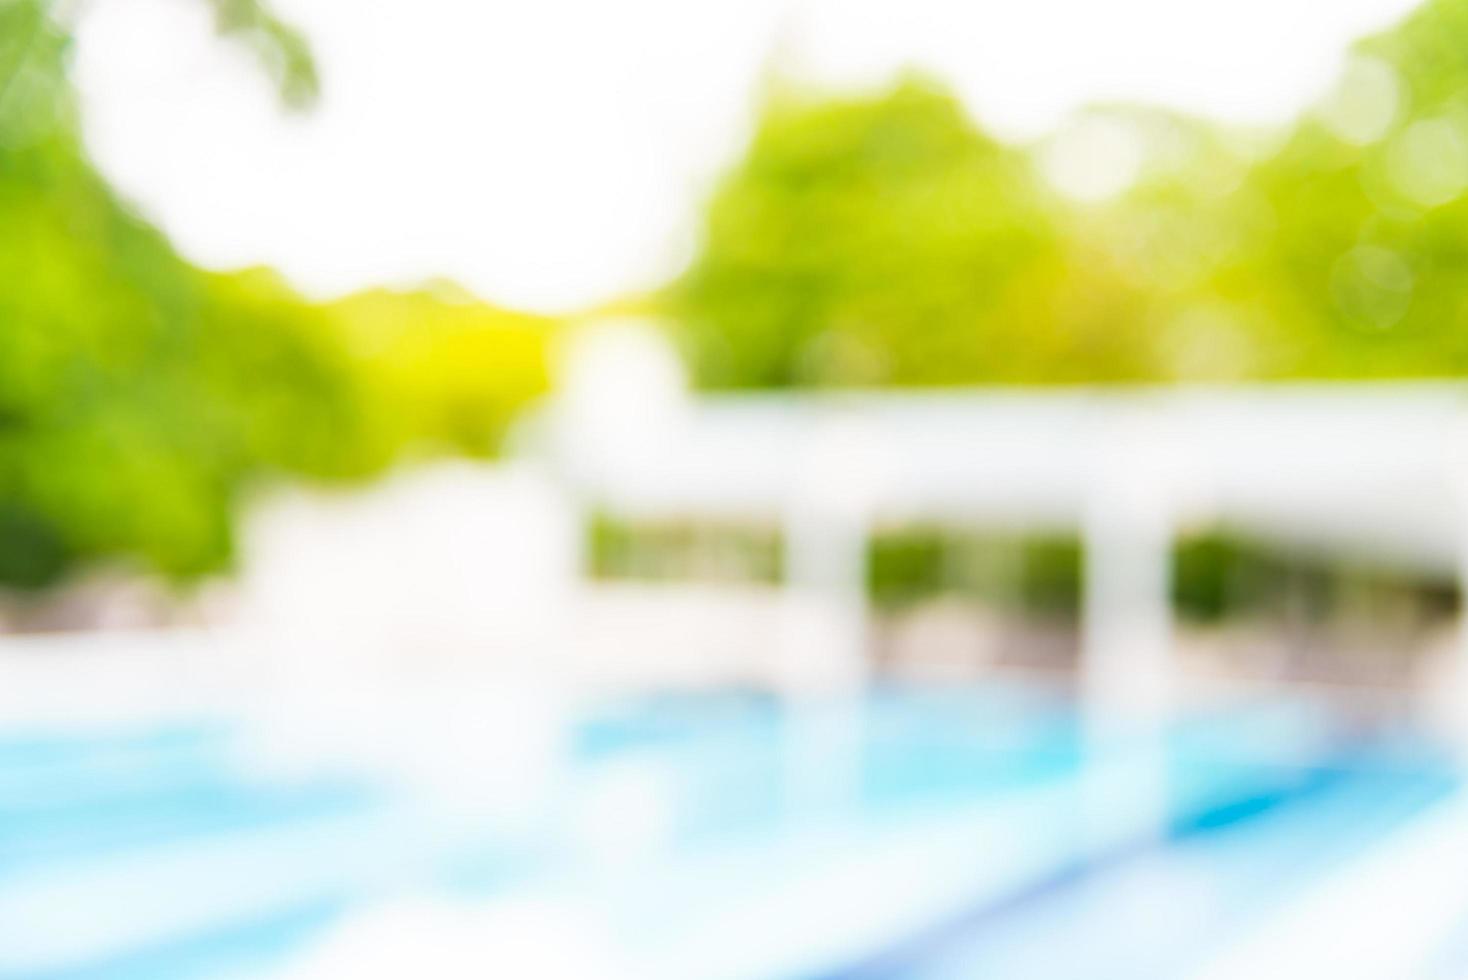 abstrakt oskärpa hotel pool resort bakgrund foto